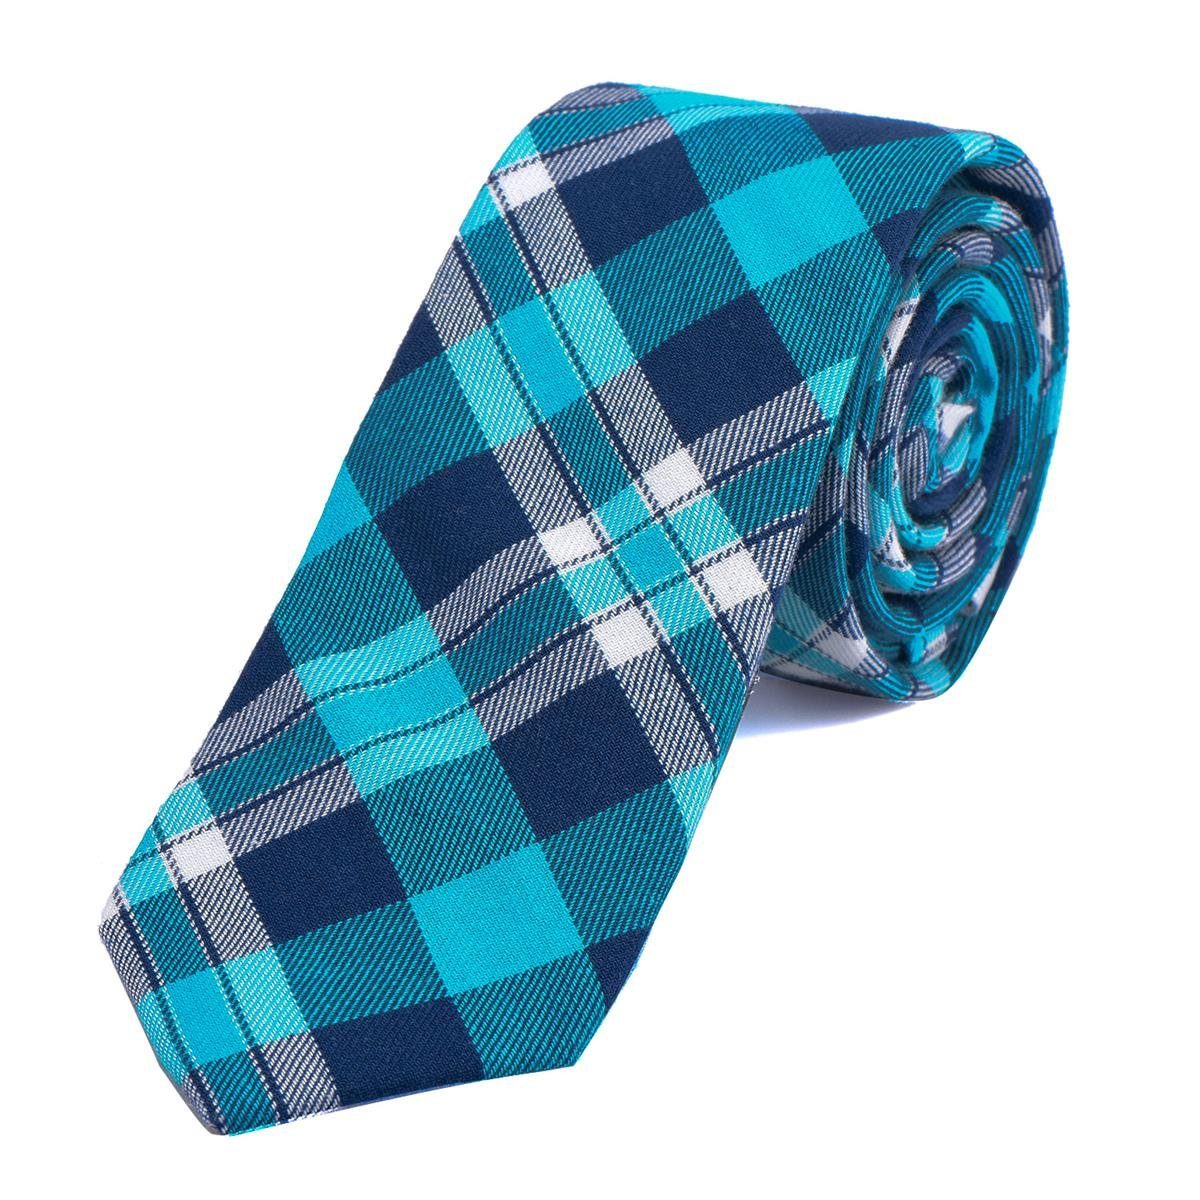 DonDon Krawatte Herren Krawatte 6 cm mit Karos oder Streifen (Packung, 1-St., 1x Krawatte) Baumwolle, kariert oder gestreift, für Büro oder festliche Veranstaltungen blau kariert 2 | Breite Krawatten